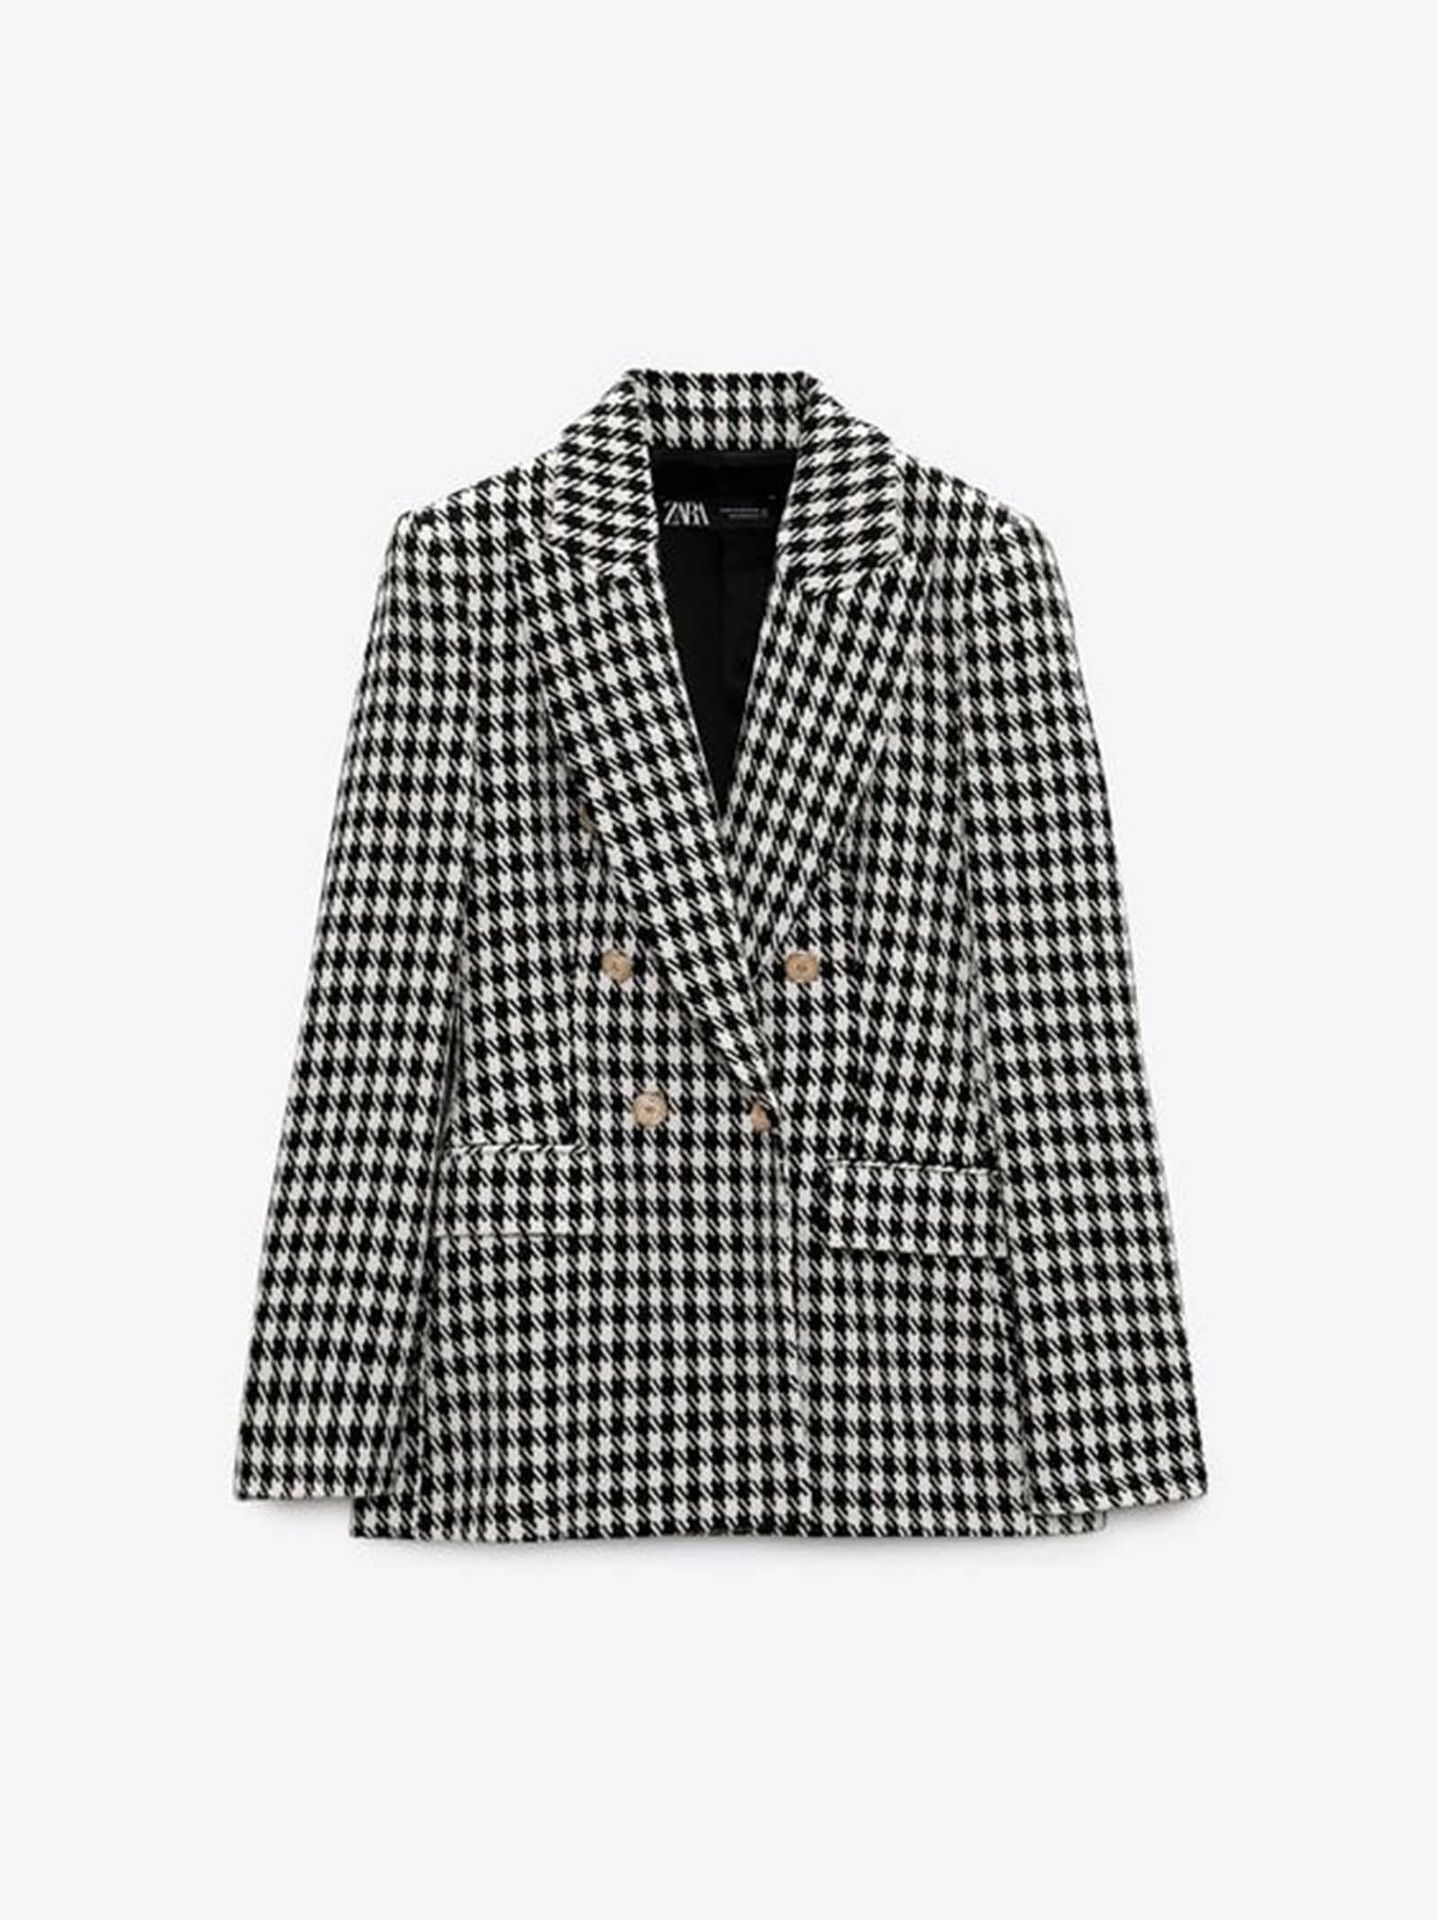 La nueva blazer de Zara que van a adorar las mujeres de París (y tú también). (Cortesía)